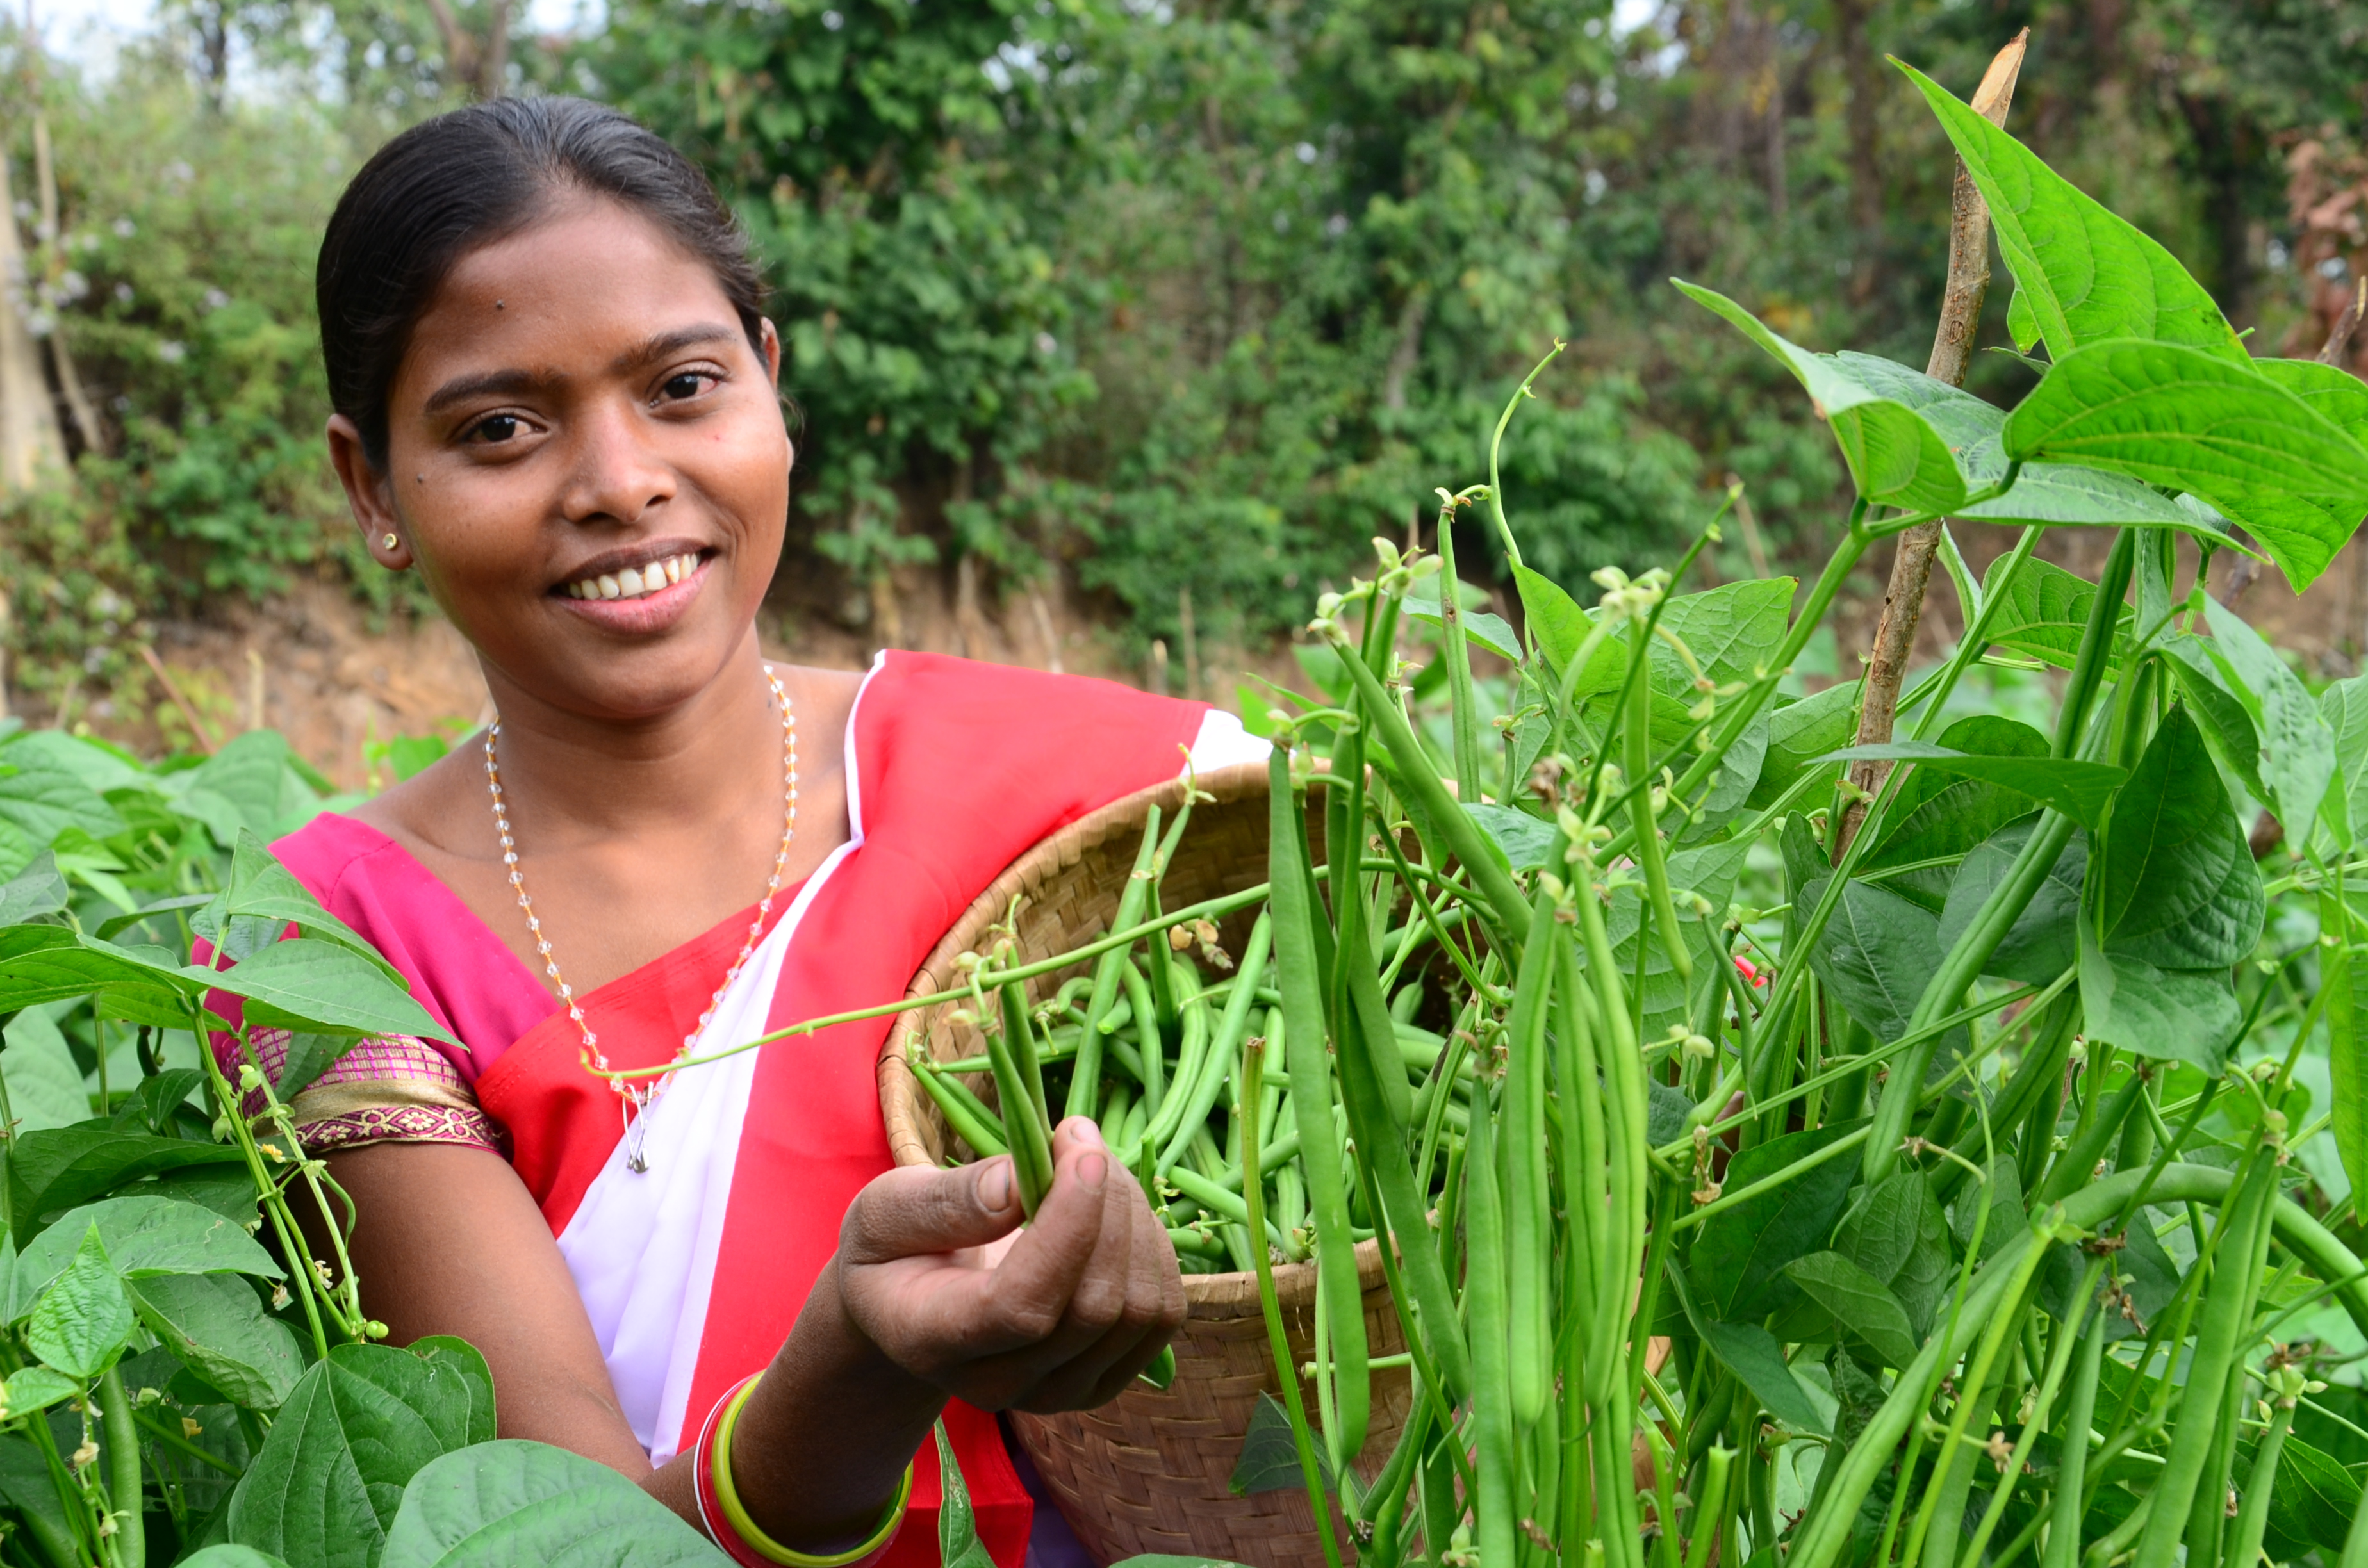 झारखंड: महिलाओं ने मिलकर शुरु की खेती तो छोटे पहाड़ी खेतों में भी उगने लगी मुनाफे की फसल